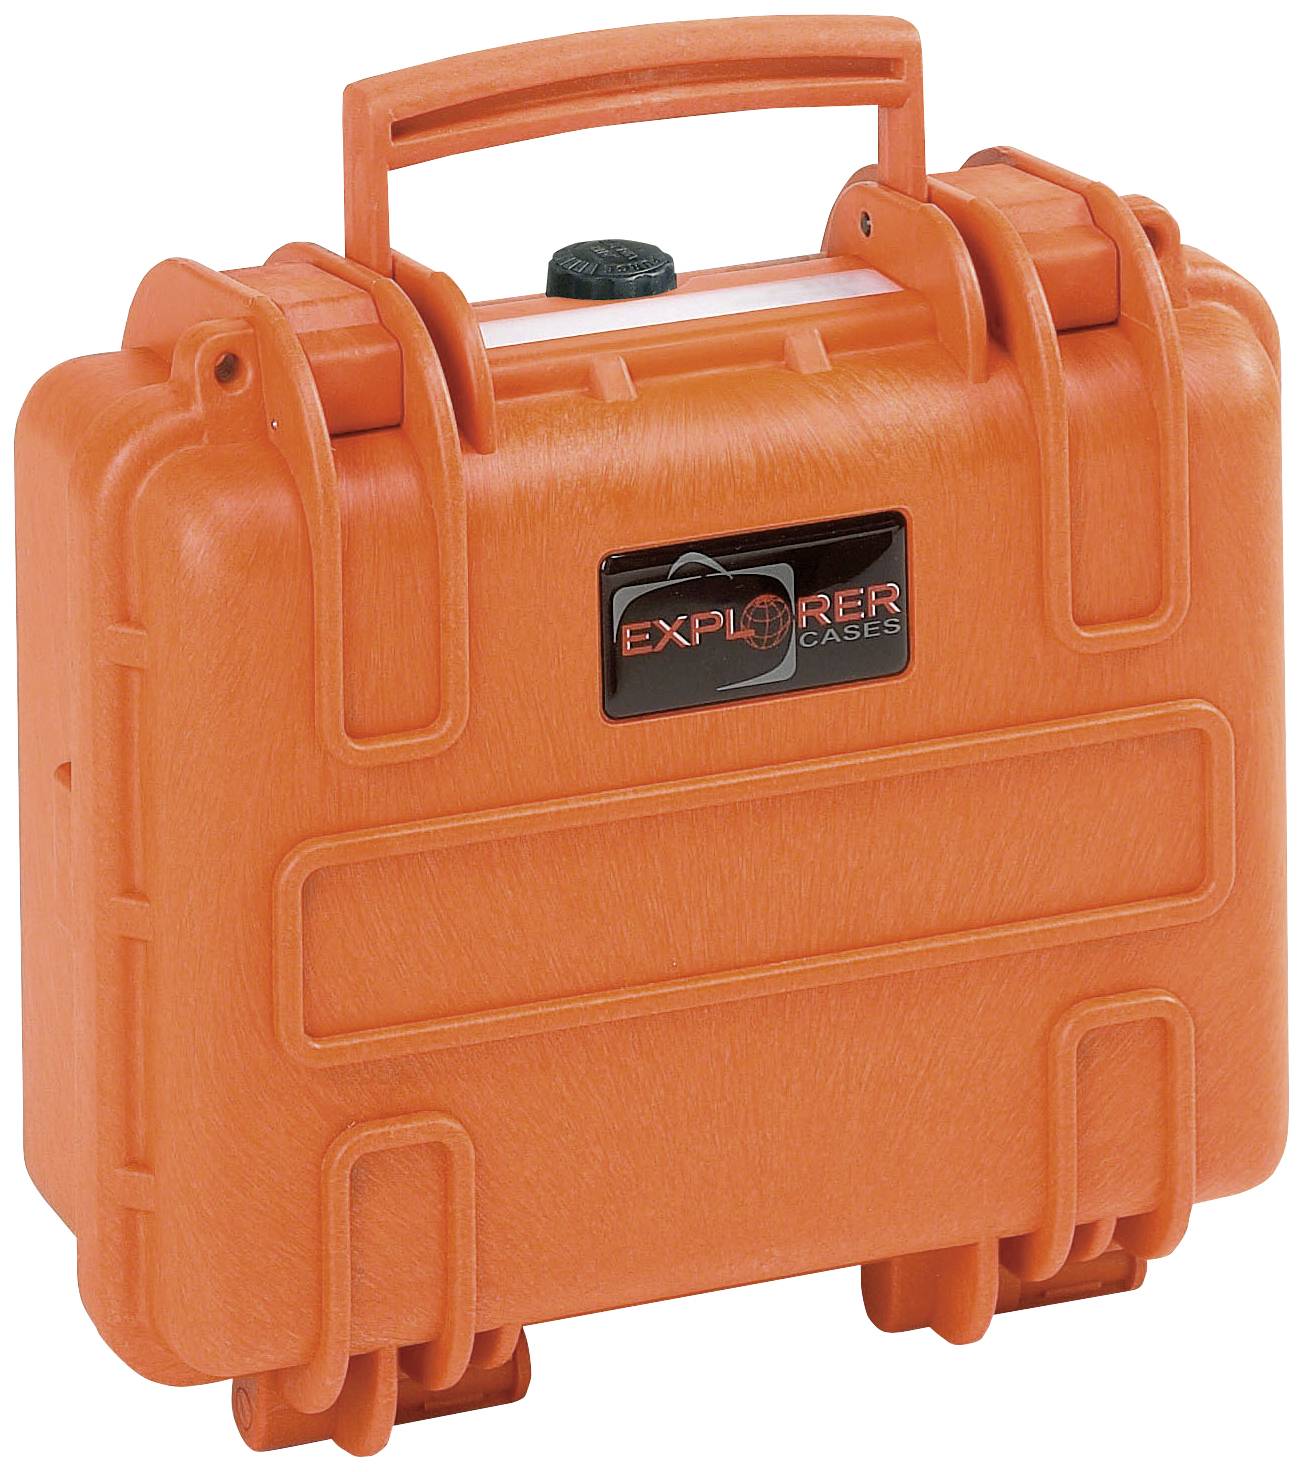 Explorer Cases Outdoor Case 6 6 L L X W X H 305 X 270 X 144 Mm Orange 2712 O